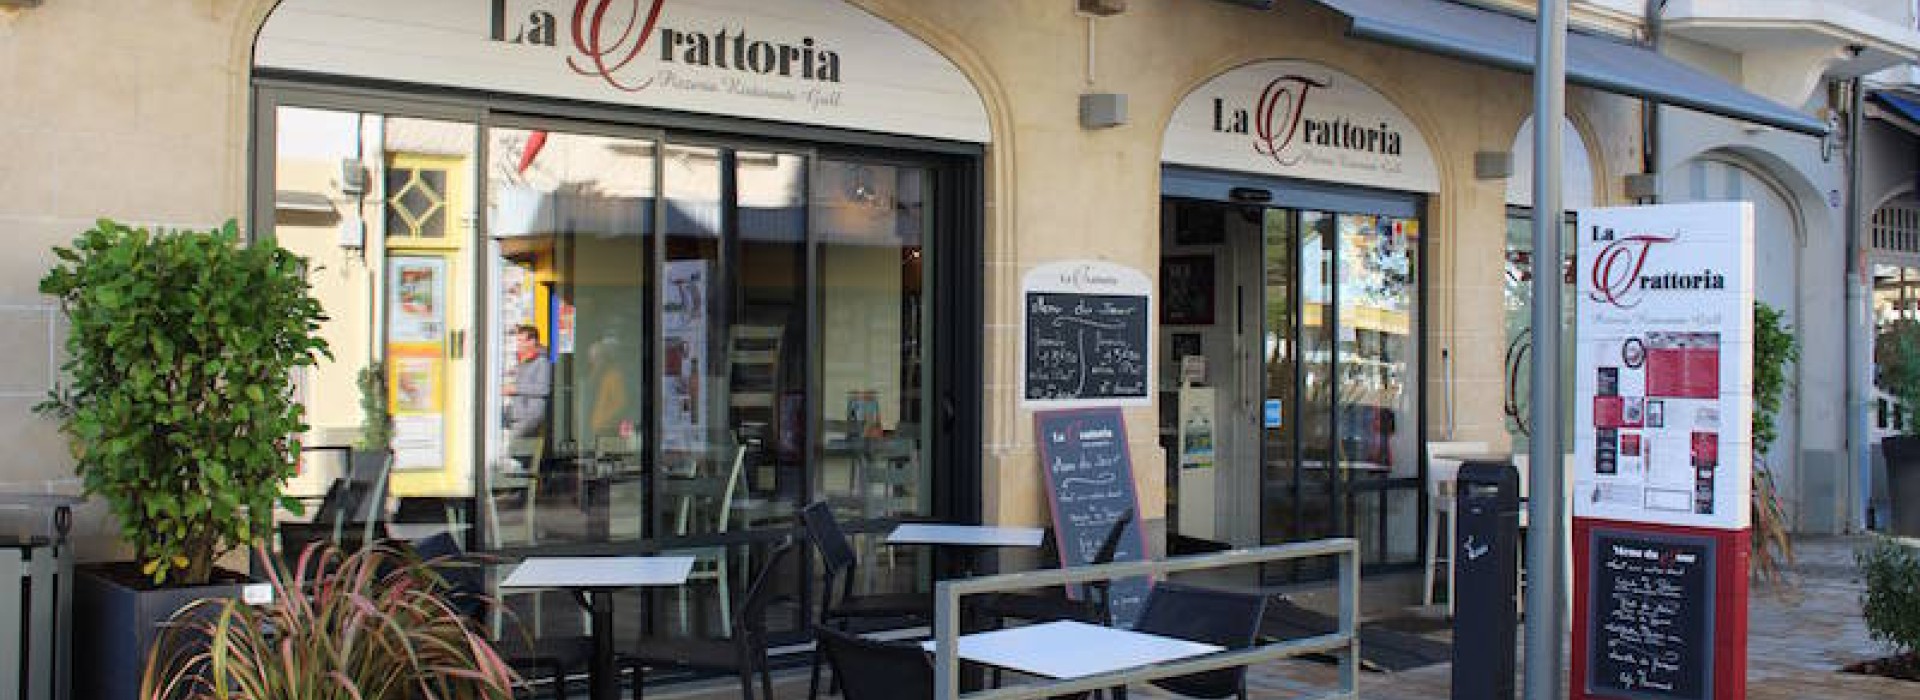  LA TRATTORIA  Restaurants France Pays de la Loire